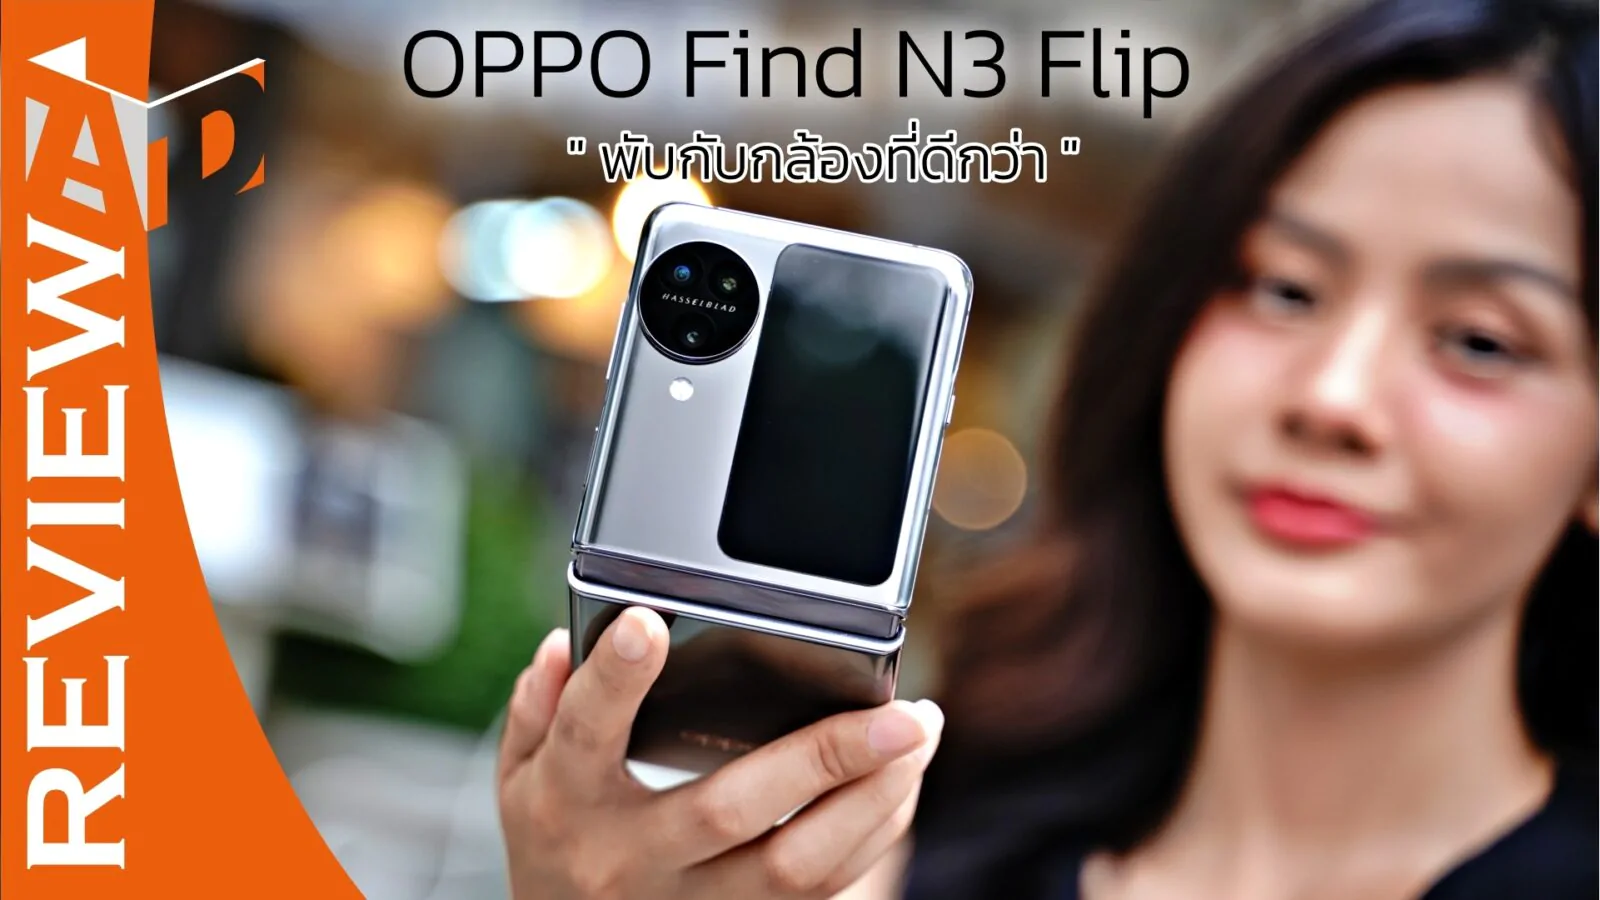 DSC05128 | Find N3 Flip | รีวิว OPPO Find N3 Flip จอพับที่ดีที่สุด กับกล้องที่ดีที่สุด